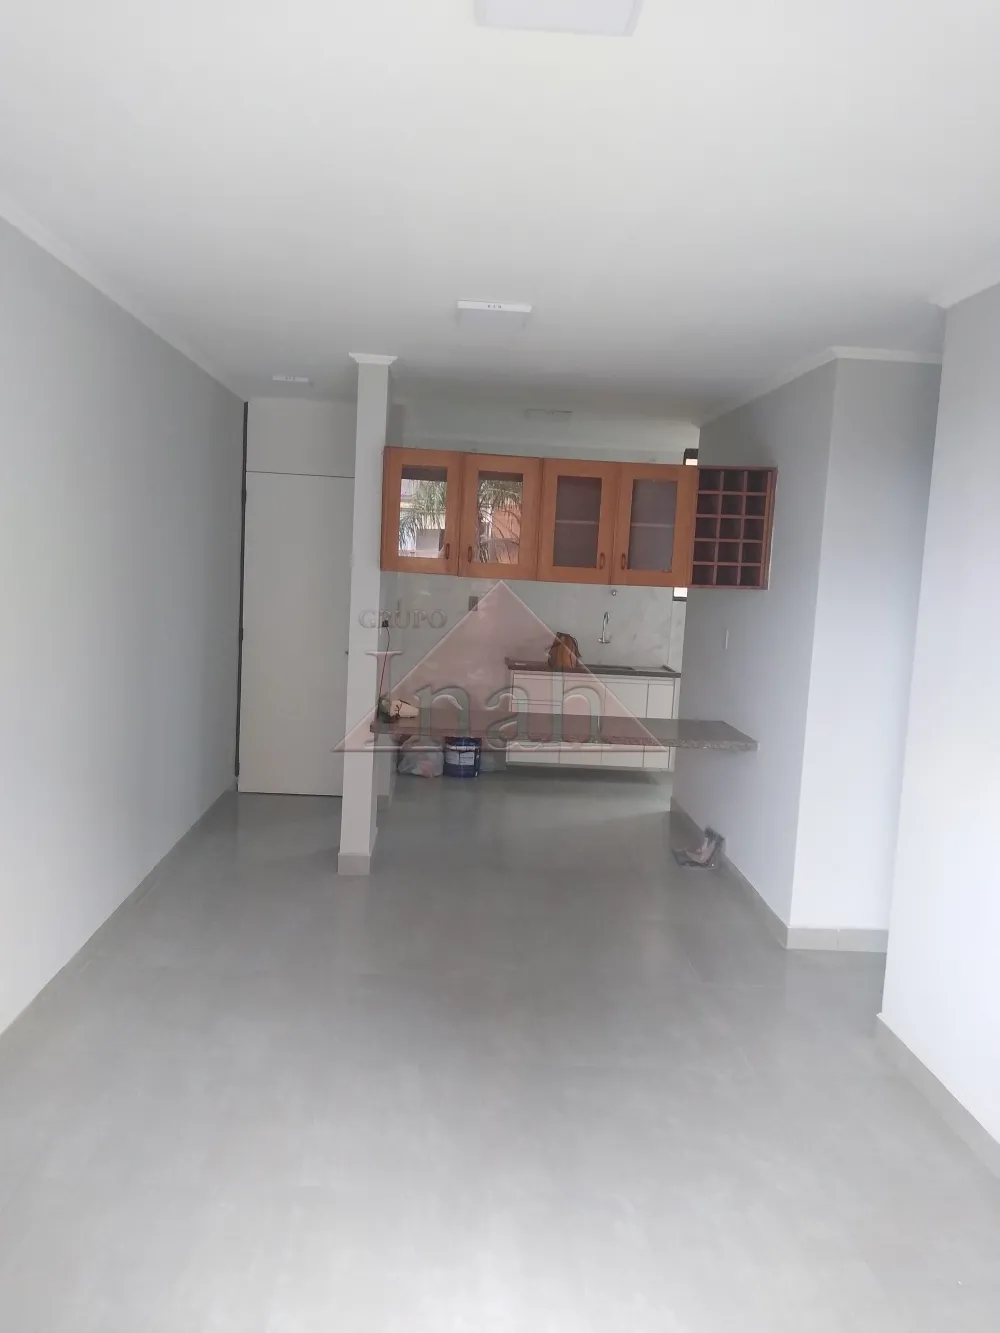 Comprar Apartamentos / Apartamento em Ribeirão Preto R$ 250.000,00 - Foto 1